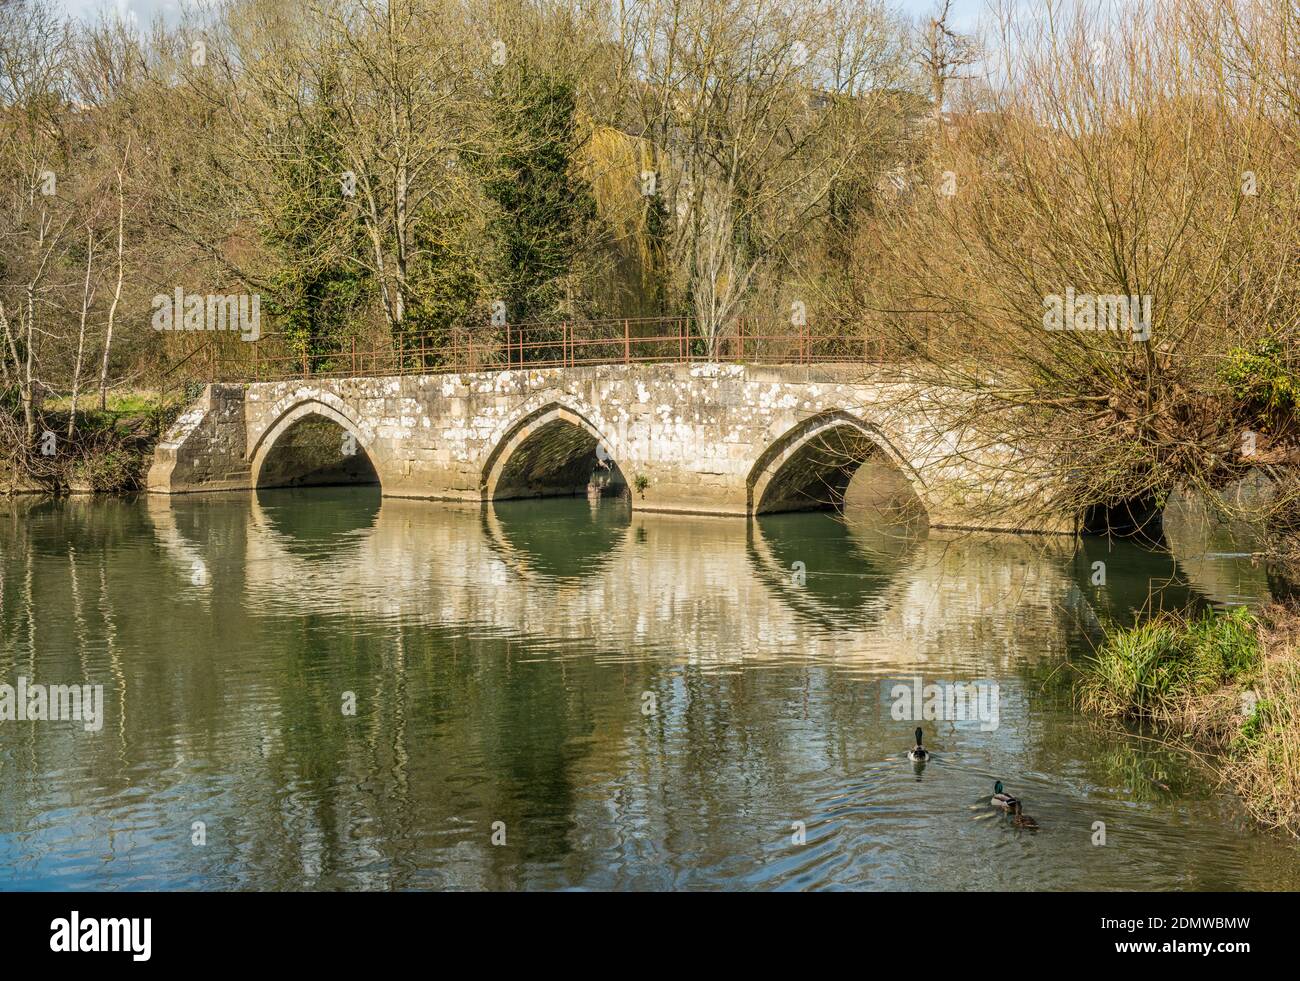 Il vecchio ponte pedonale in pietra ad arco che attraversa il fiume Avon, a Bradford su Avon, Wiltshire, Inghilterra sud-occidentale Foto Stock